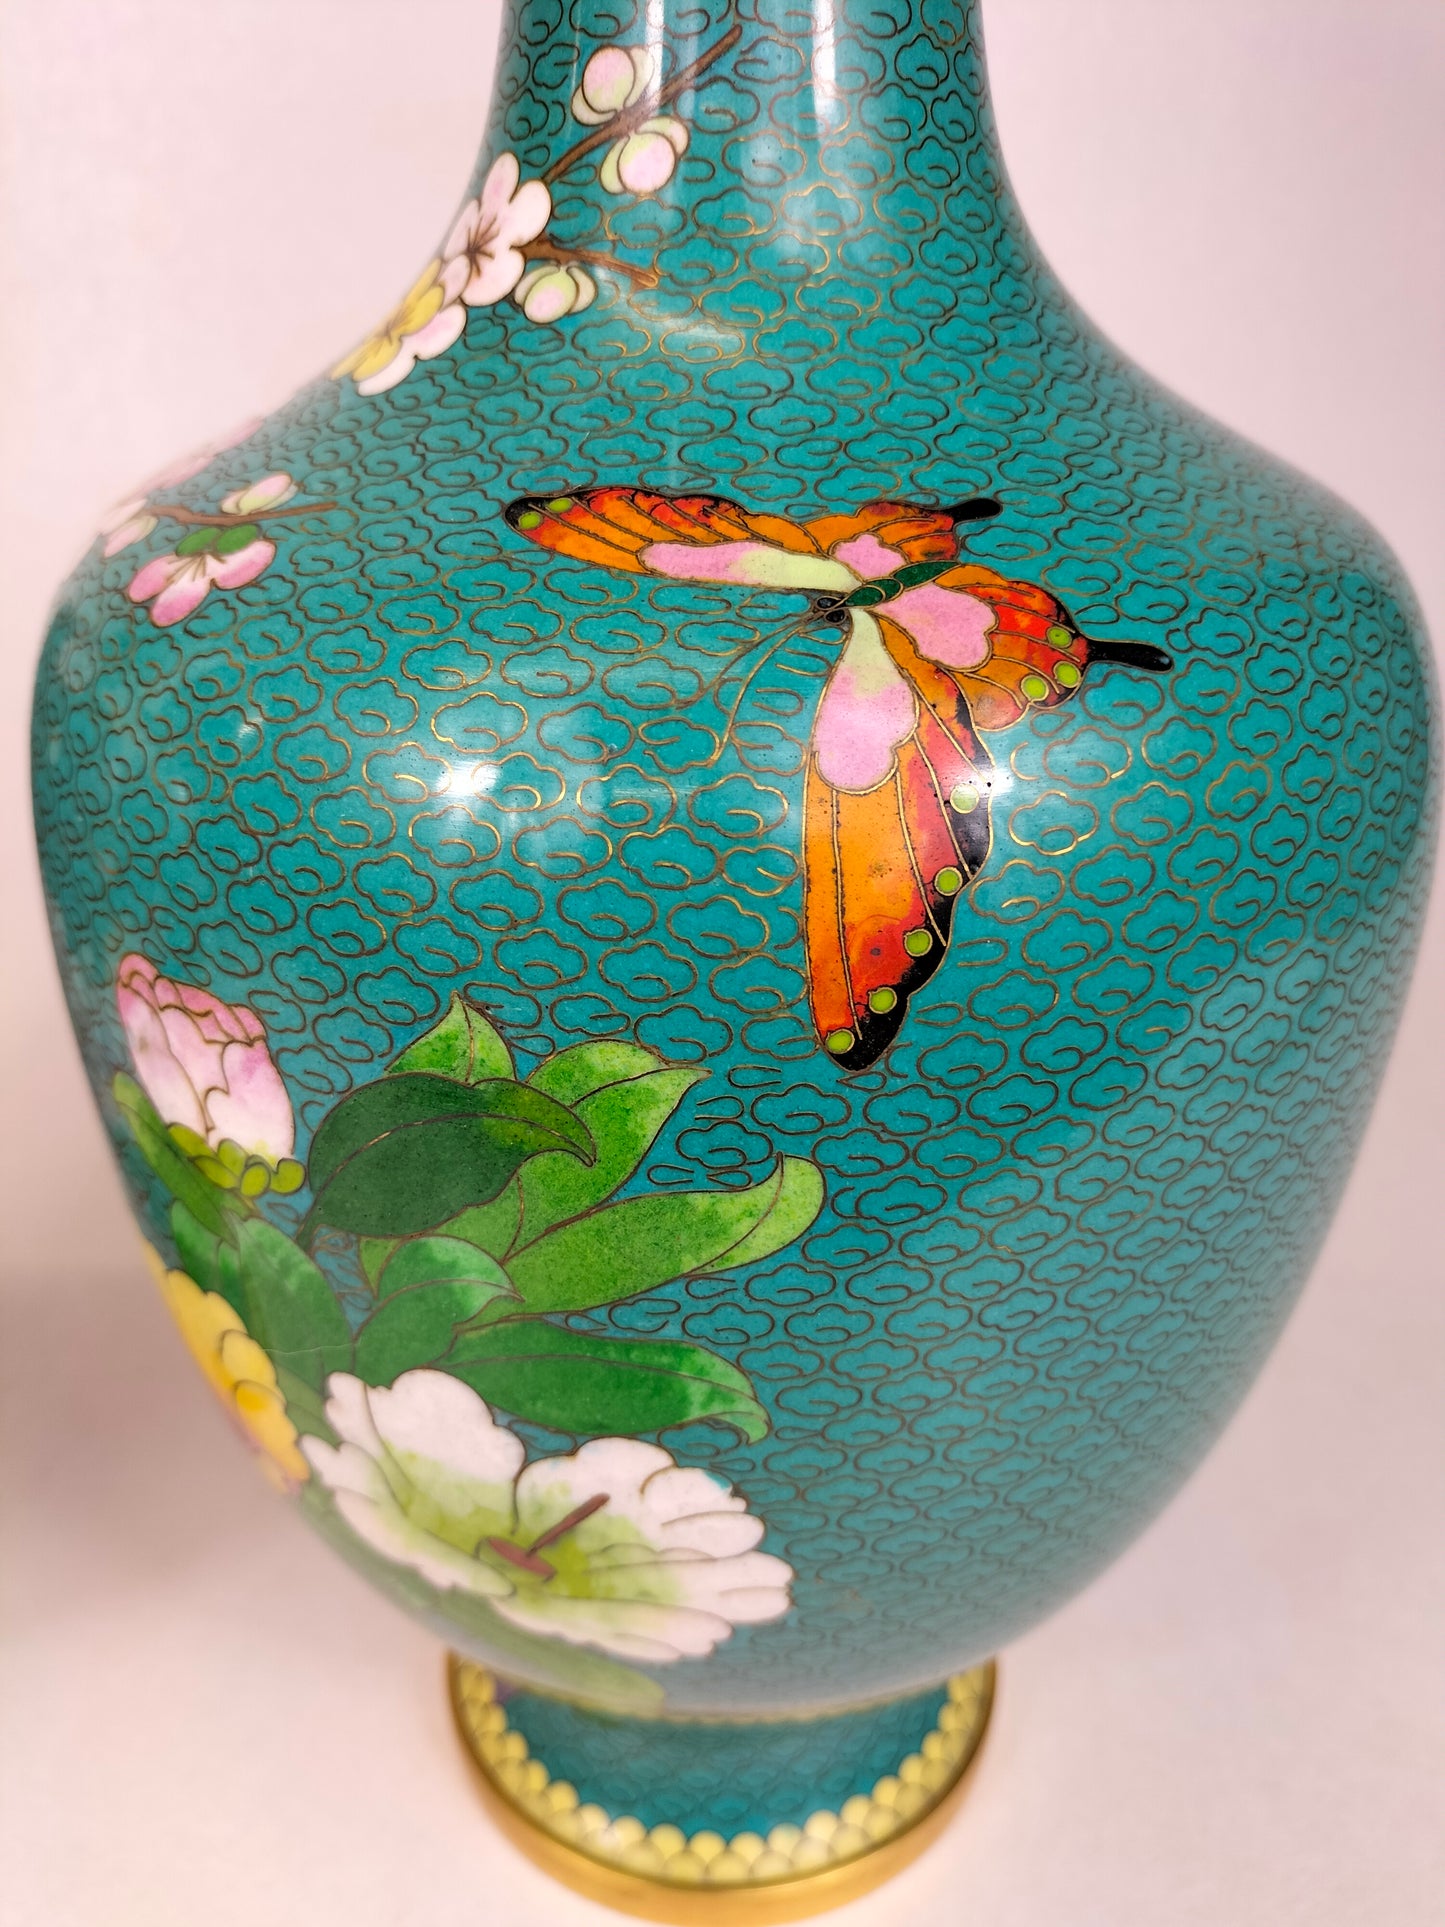 Paire de grands vases chinois cloisonnés à décor de fleurs // XXème siècle